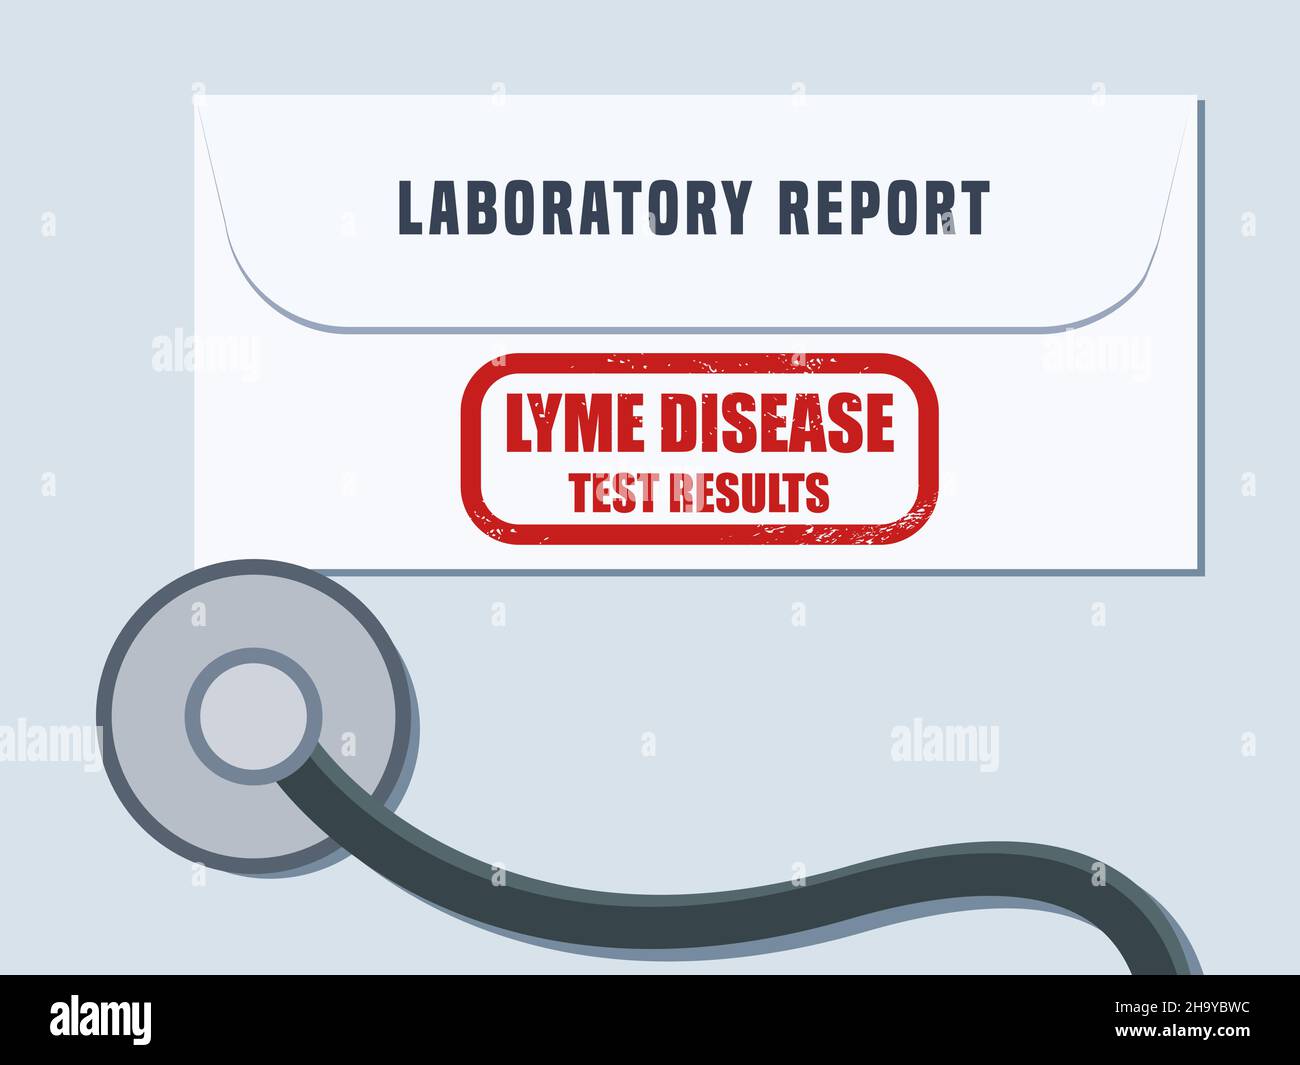 Lyme-Borreliose Bluttest Ergebnisse Umschlag. Medizinischer Laborbericht zum Gesundheits-Screening - Vektordarstellung. Stock Vektor